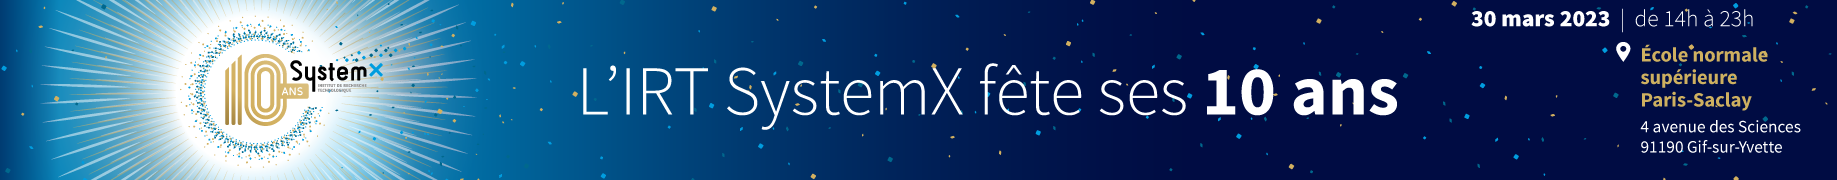 Les 10 ans de l’IRT SystemX